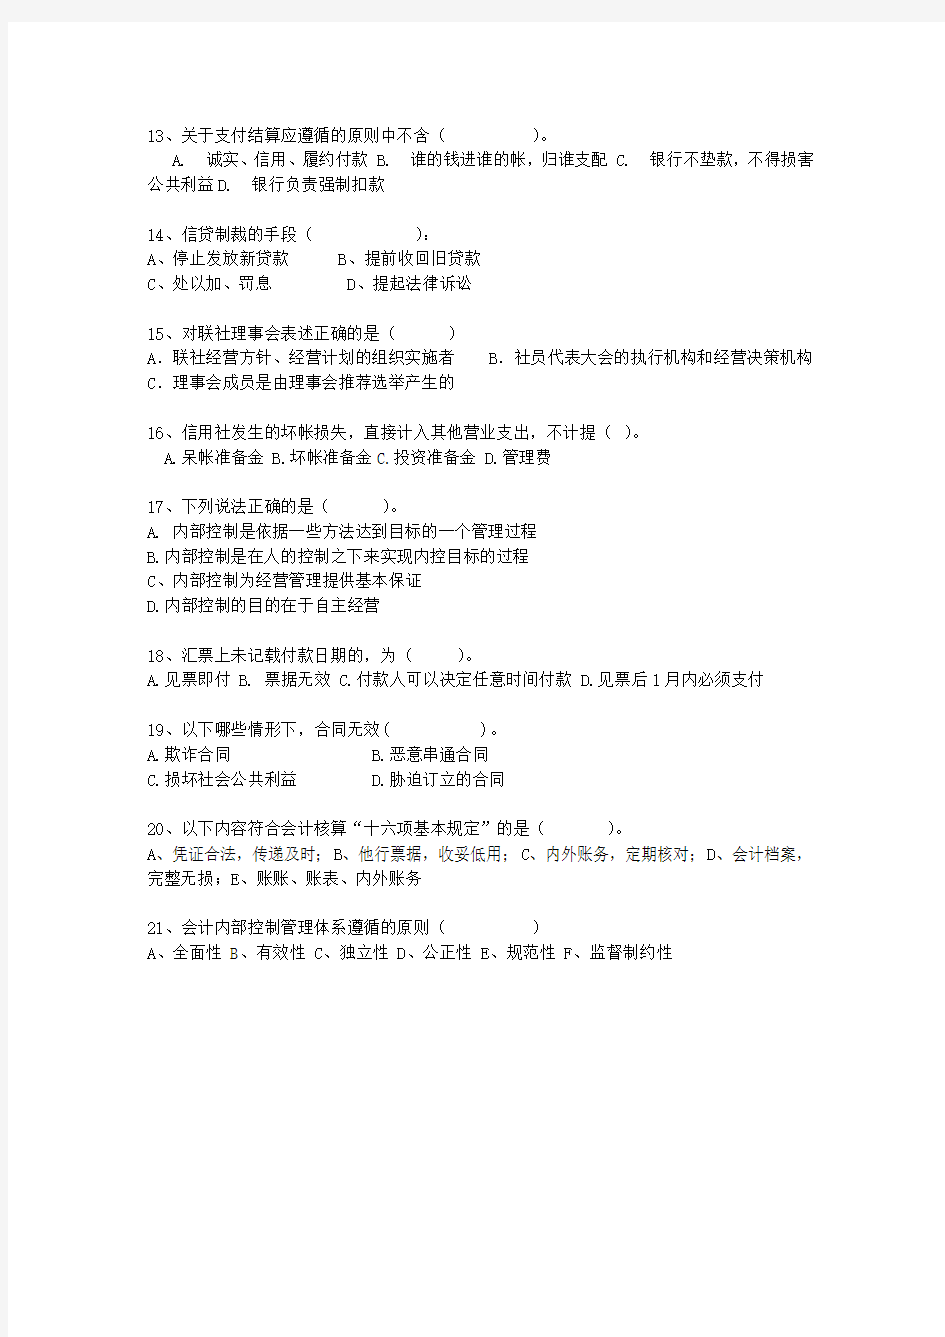 2015河北省农村信用社转正最新考试试题库(完整版)